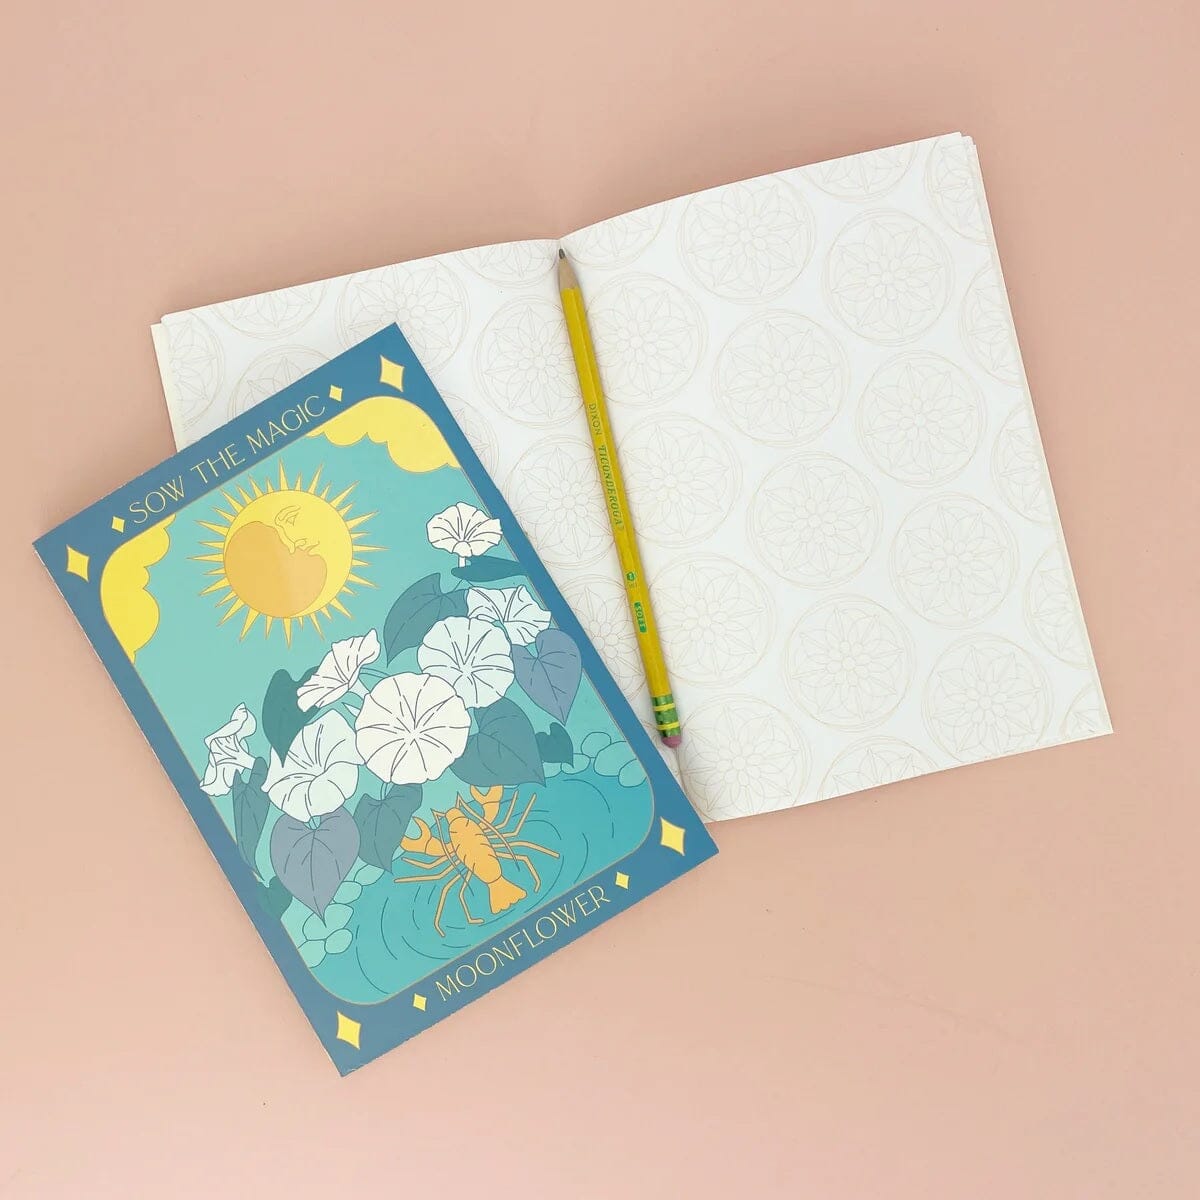 Tarot Journal Notebook